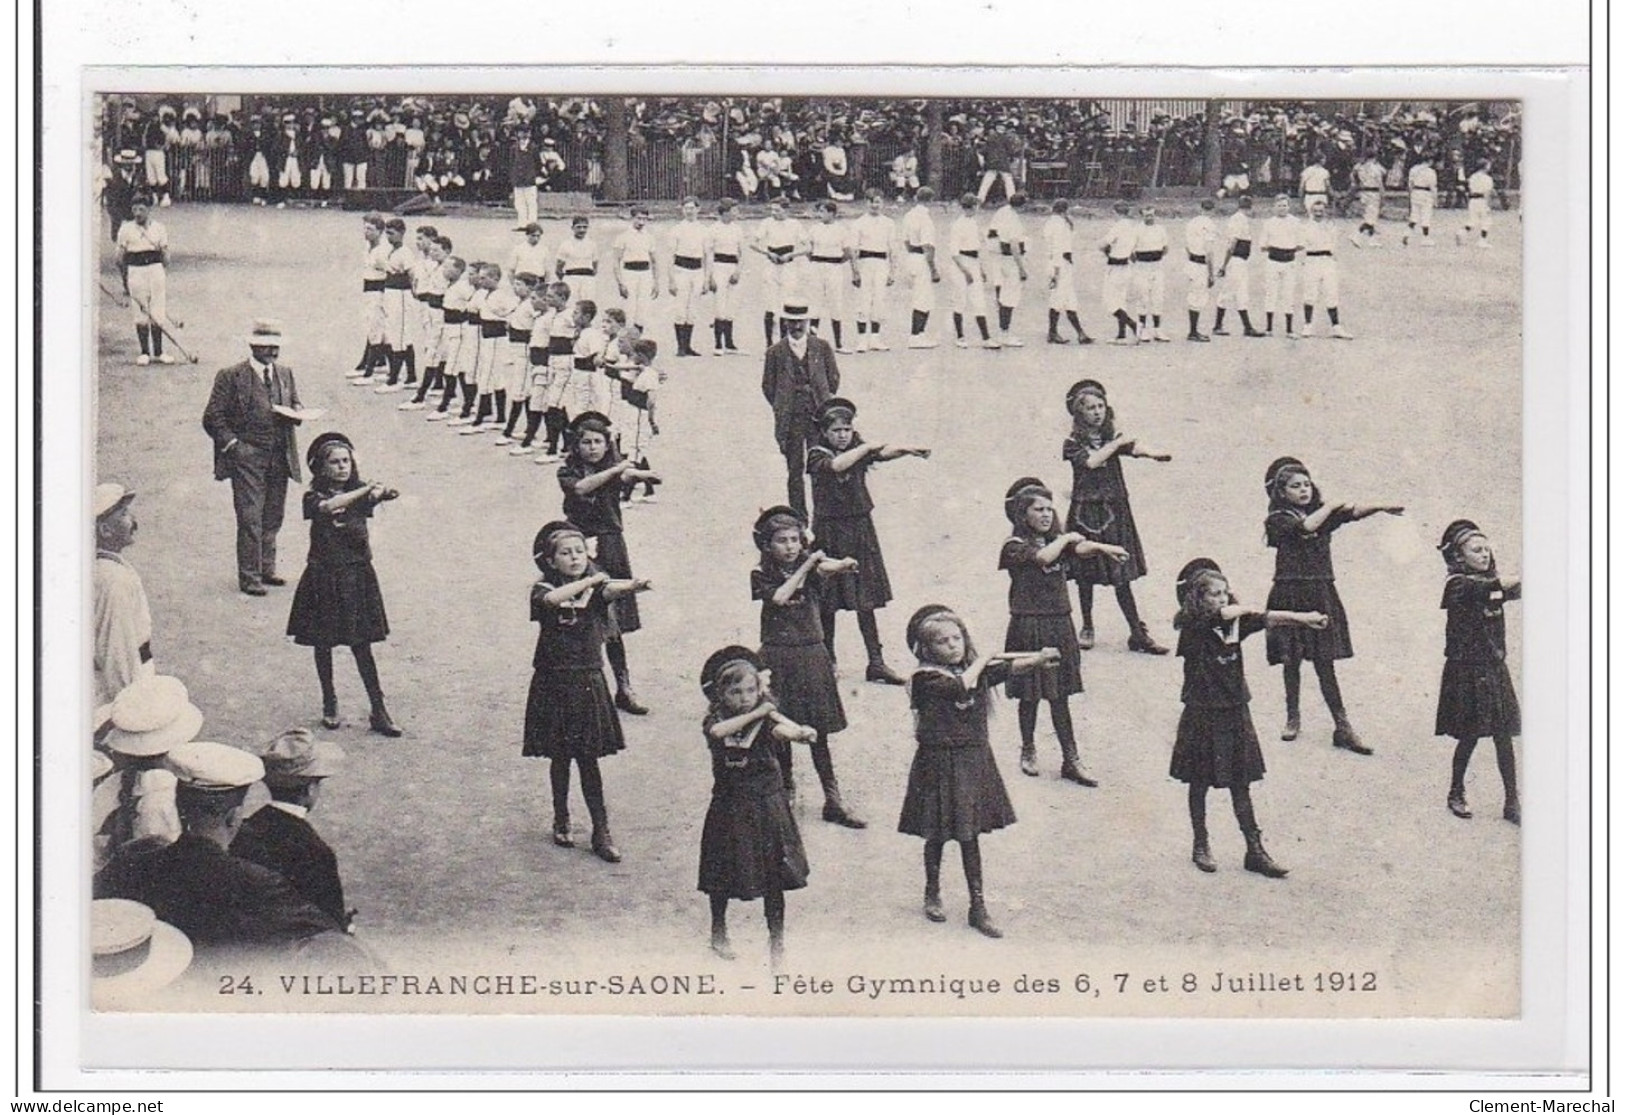 VILLEFRANCHE-sur-SAONE : Fete Gymnique Des 6,7 Et 8 Juillet 1912 - Tres Bon Etat - Villefranche-sur-Saone